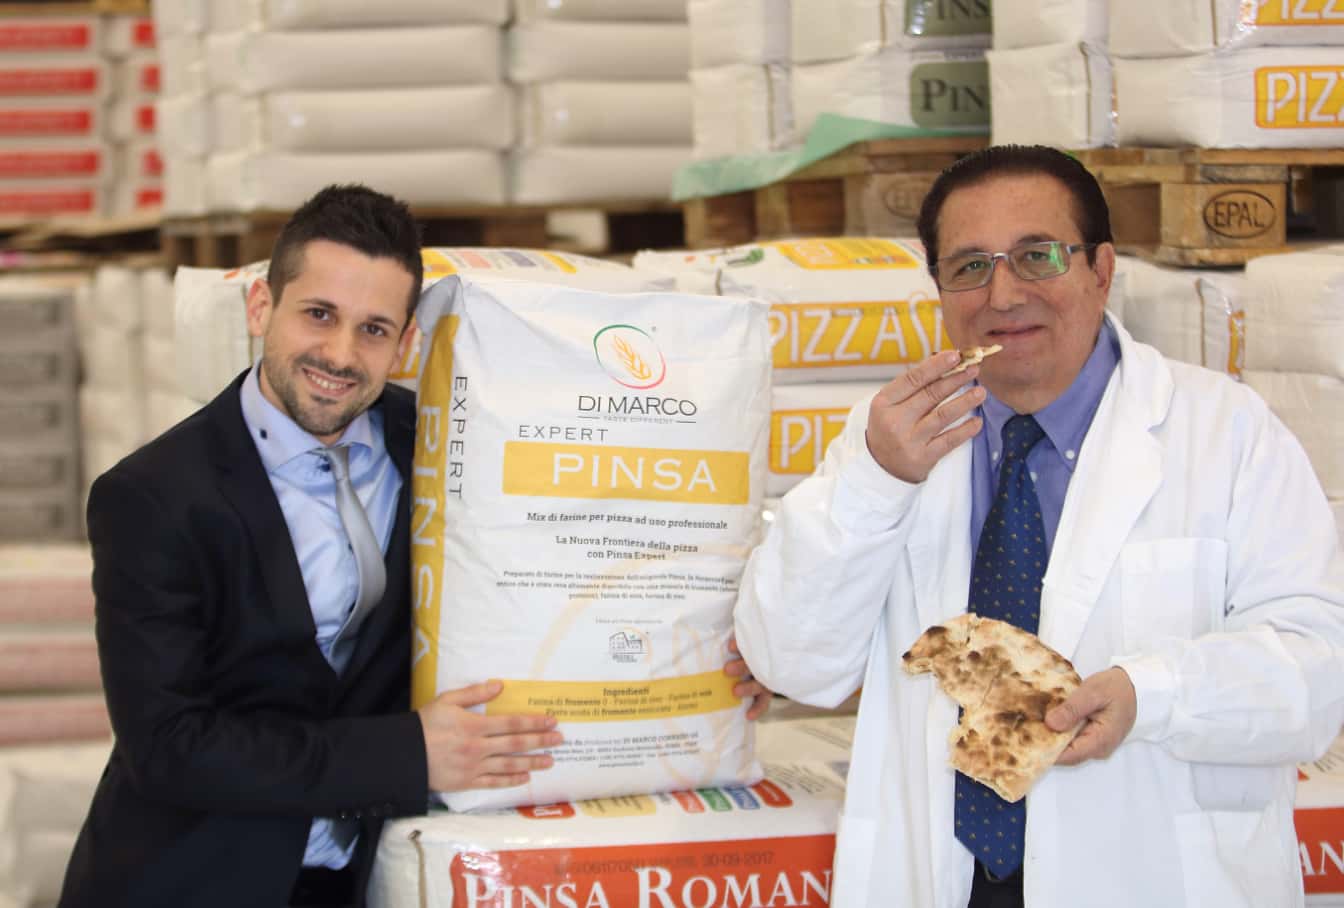 Foto di Corrado di Marco, con un membro dello staff, mentre assaggia un pezzo di Pinsa con dei sacchi di farina alle spalle.